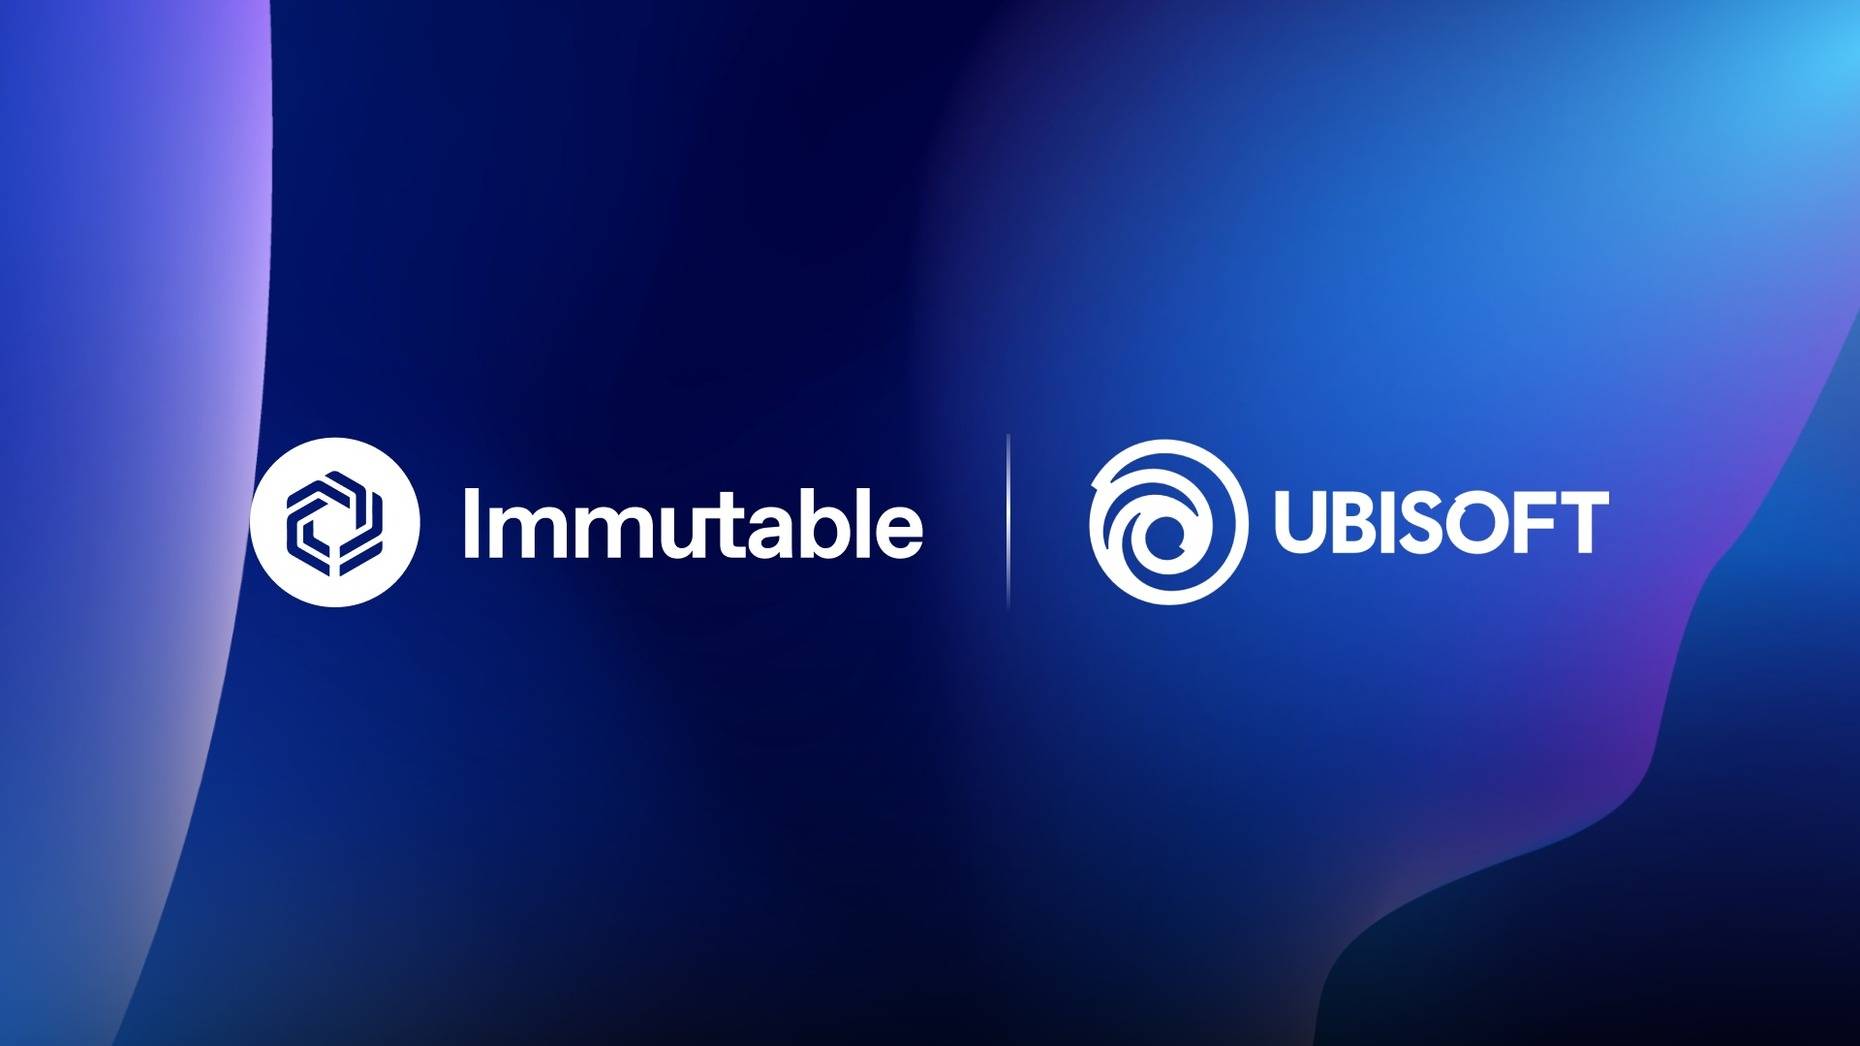 Ubisoft e Immutable unem forças para uma experiência revolucionária de jogos na Web3